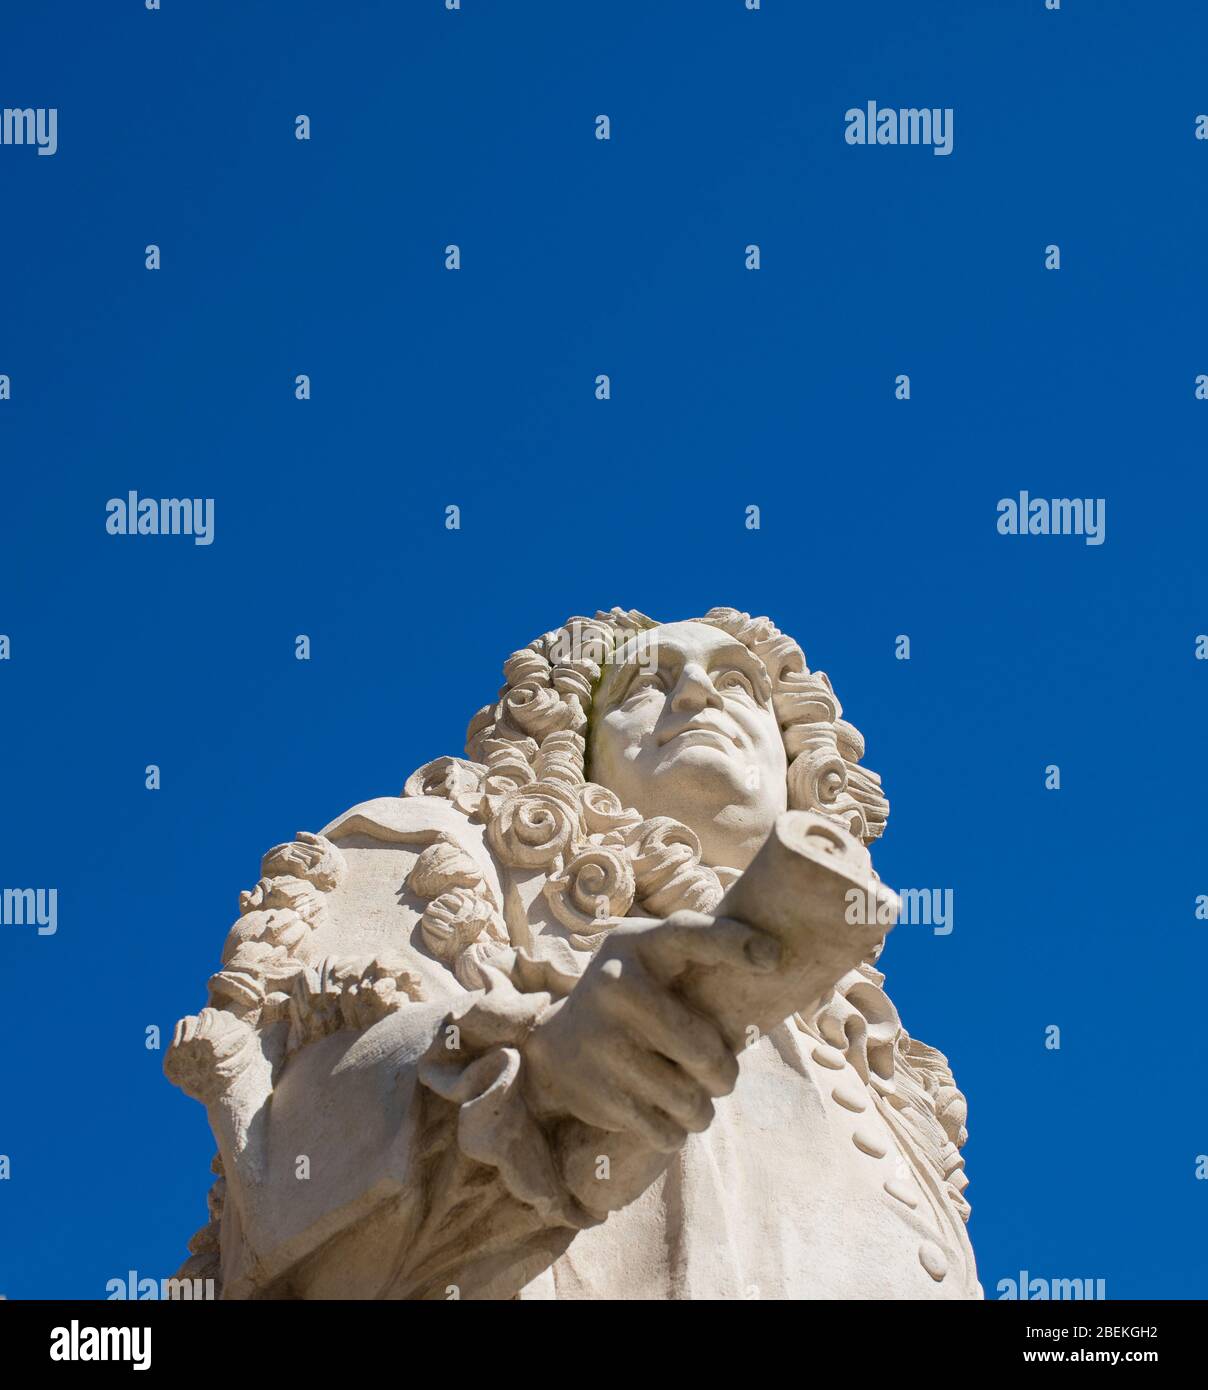 Statua di Sir Hans Sloane, 1° Baronet, PRS in Duke of York Square, vicino a Sloane Square, Kensington, Londra, Regno Unito; scolpita da Simon Smith, 2005 Foto Stock